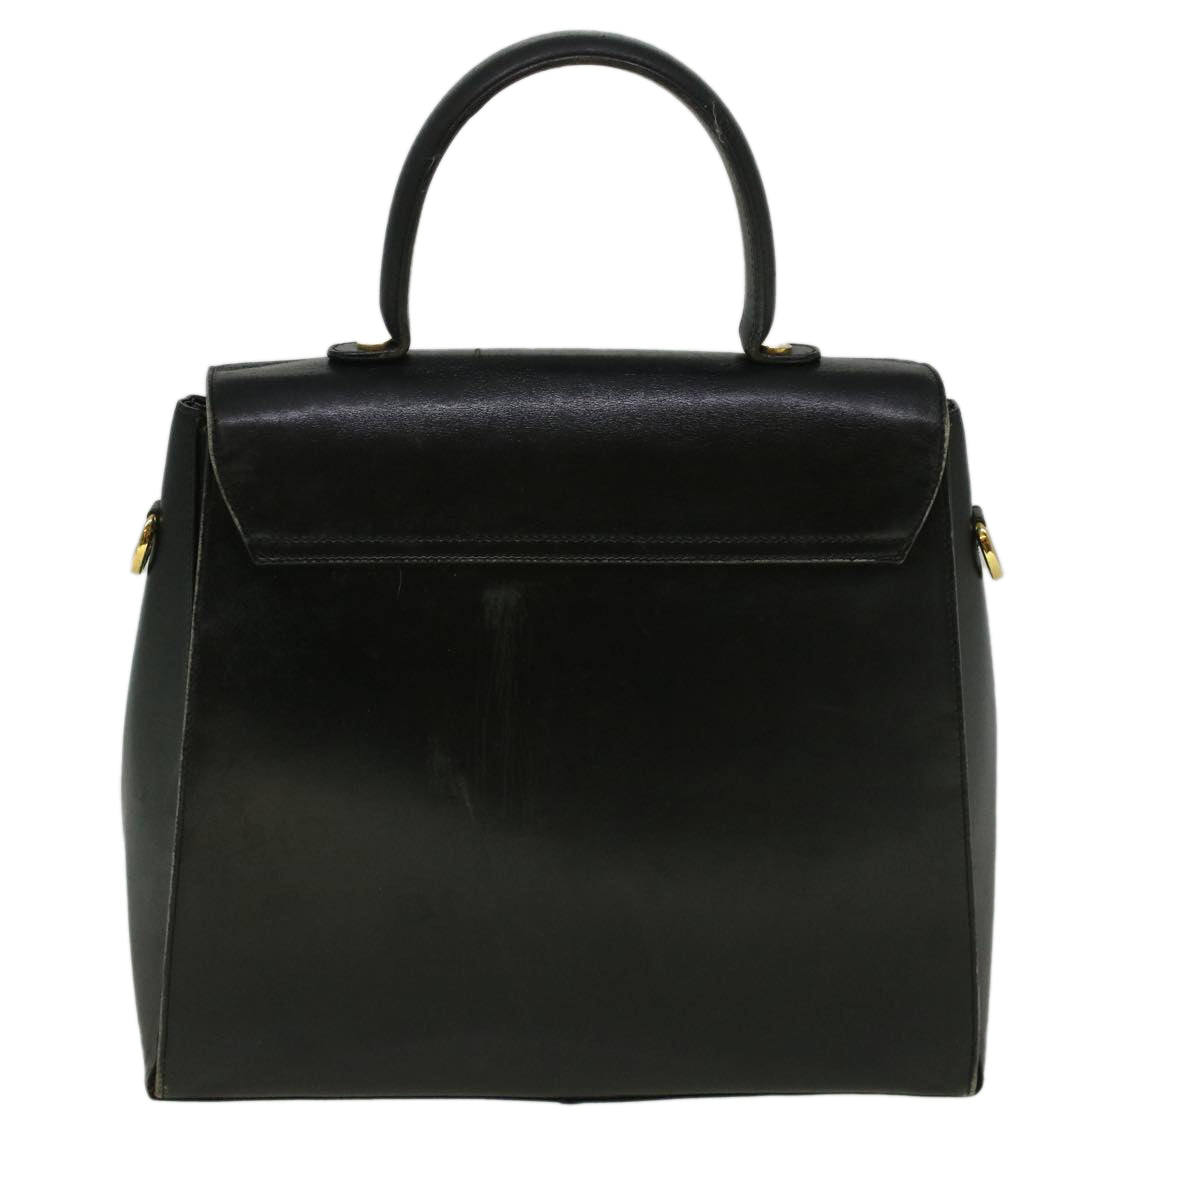 Salvatore Ferragamo Gancini Hand Bag Leather Black Auth 59157 - 0